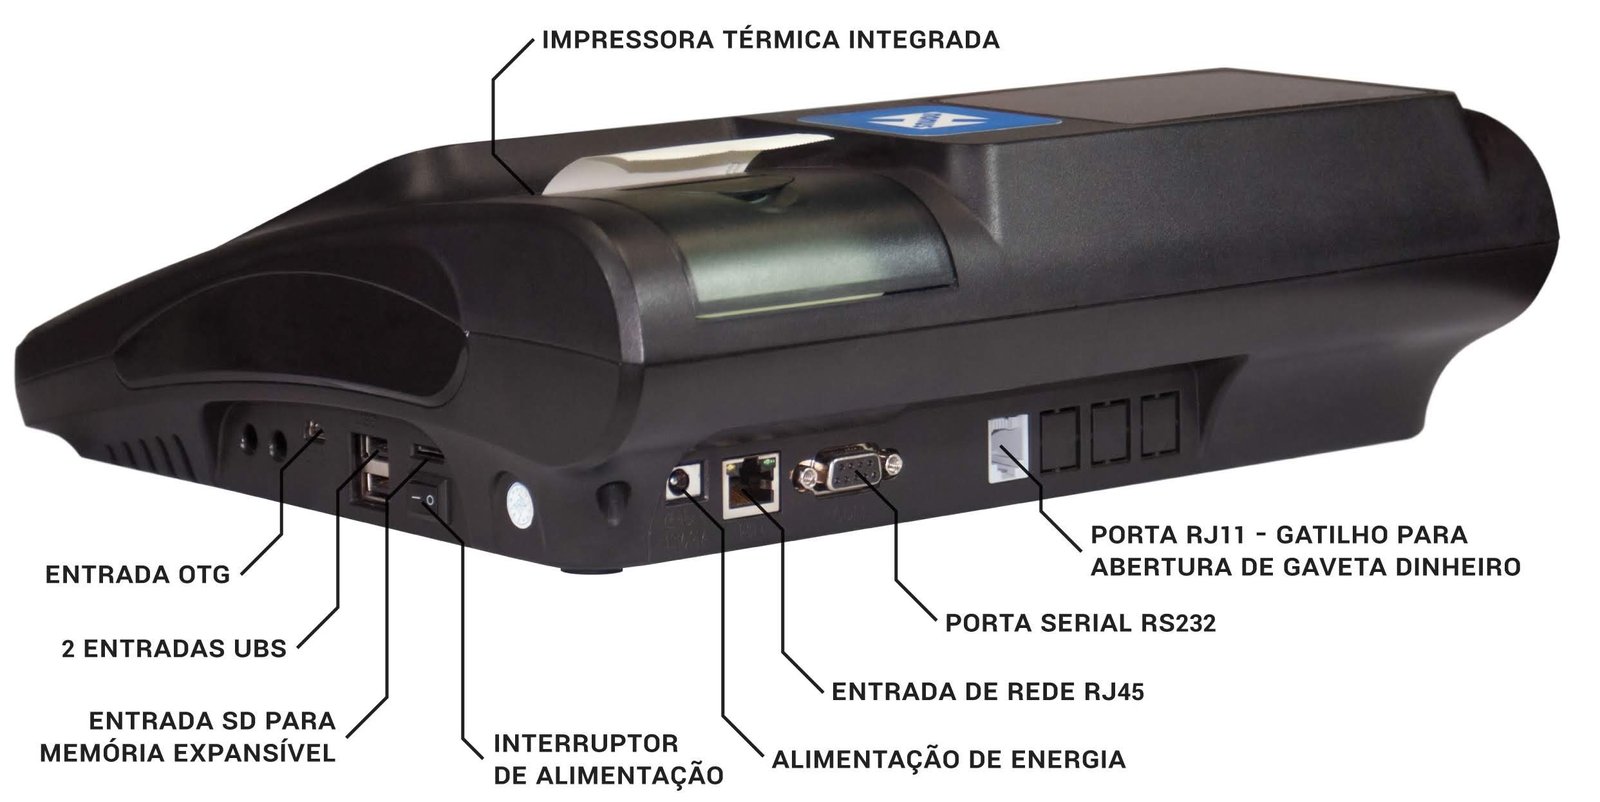 Imagem do PDV Box com destaque das interfaces.